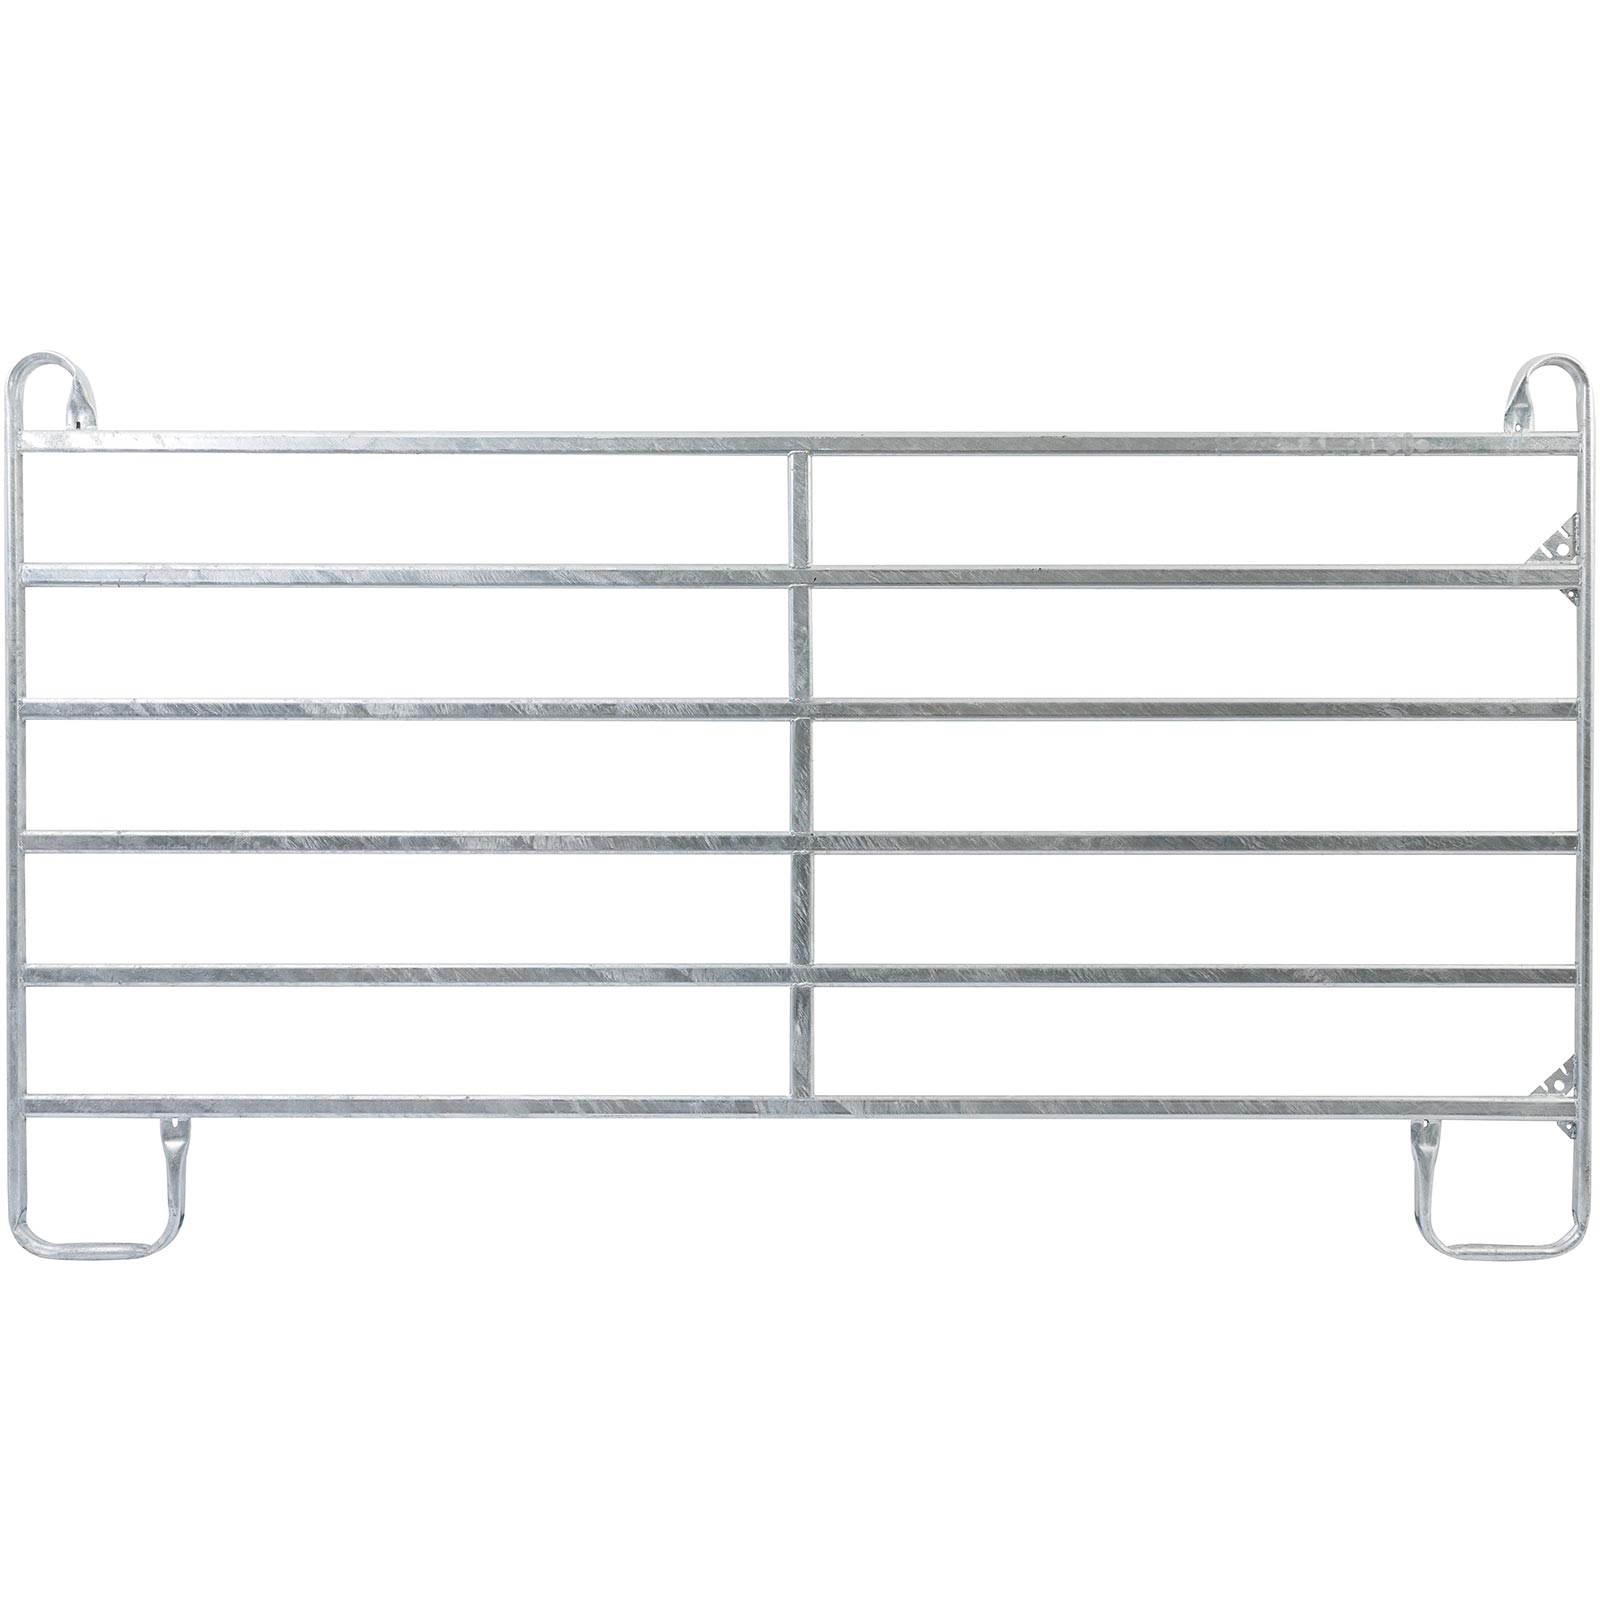 Kerítés panel szett 3 x 3 m 4-es panel-box kapuval